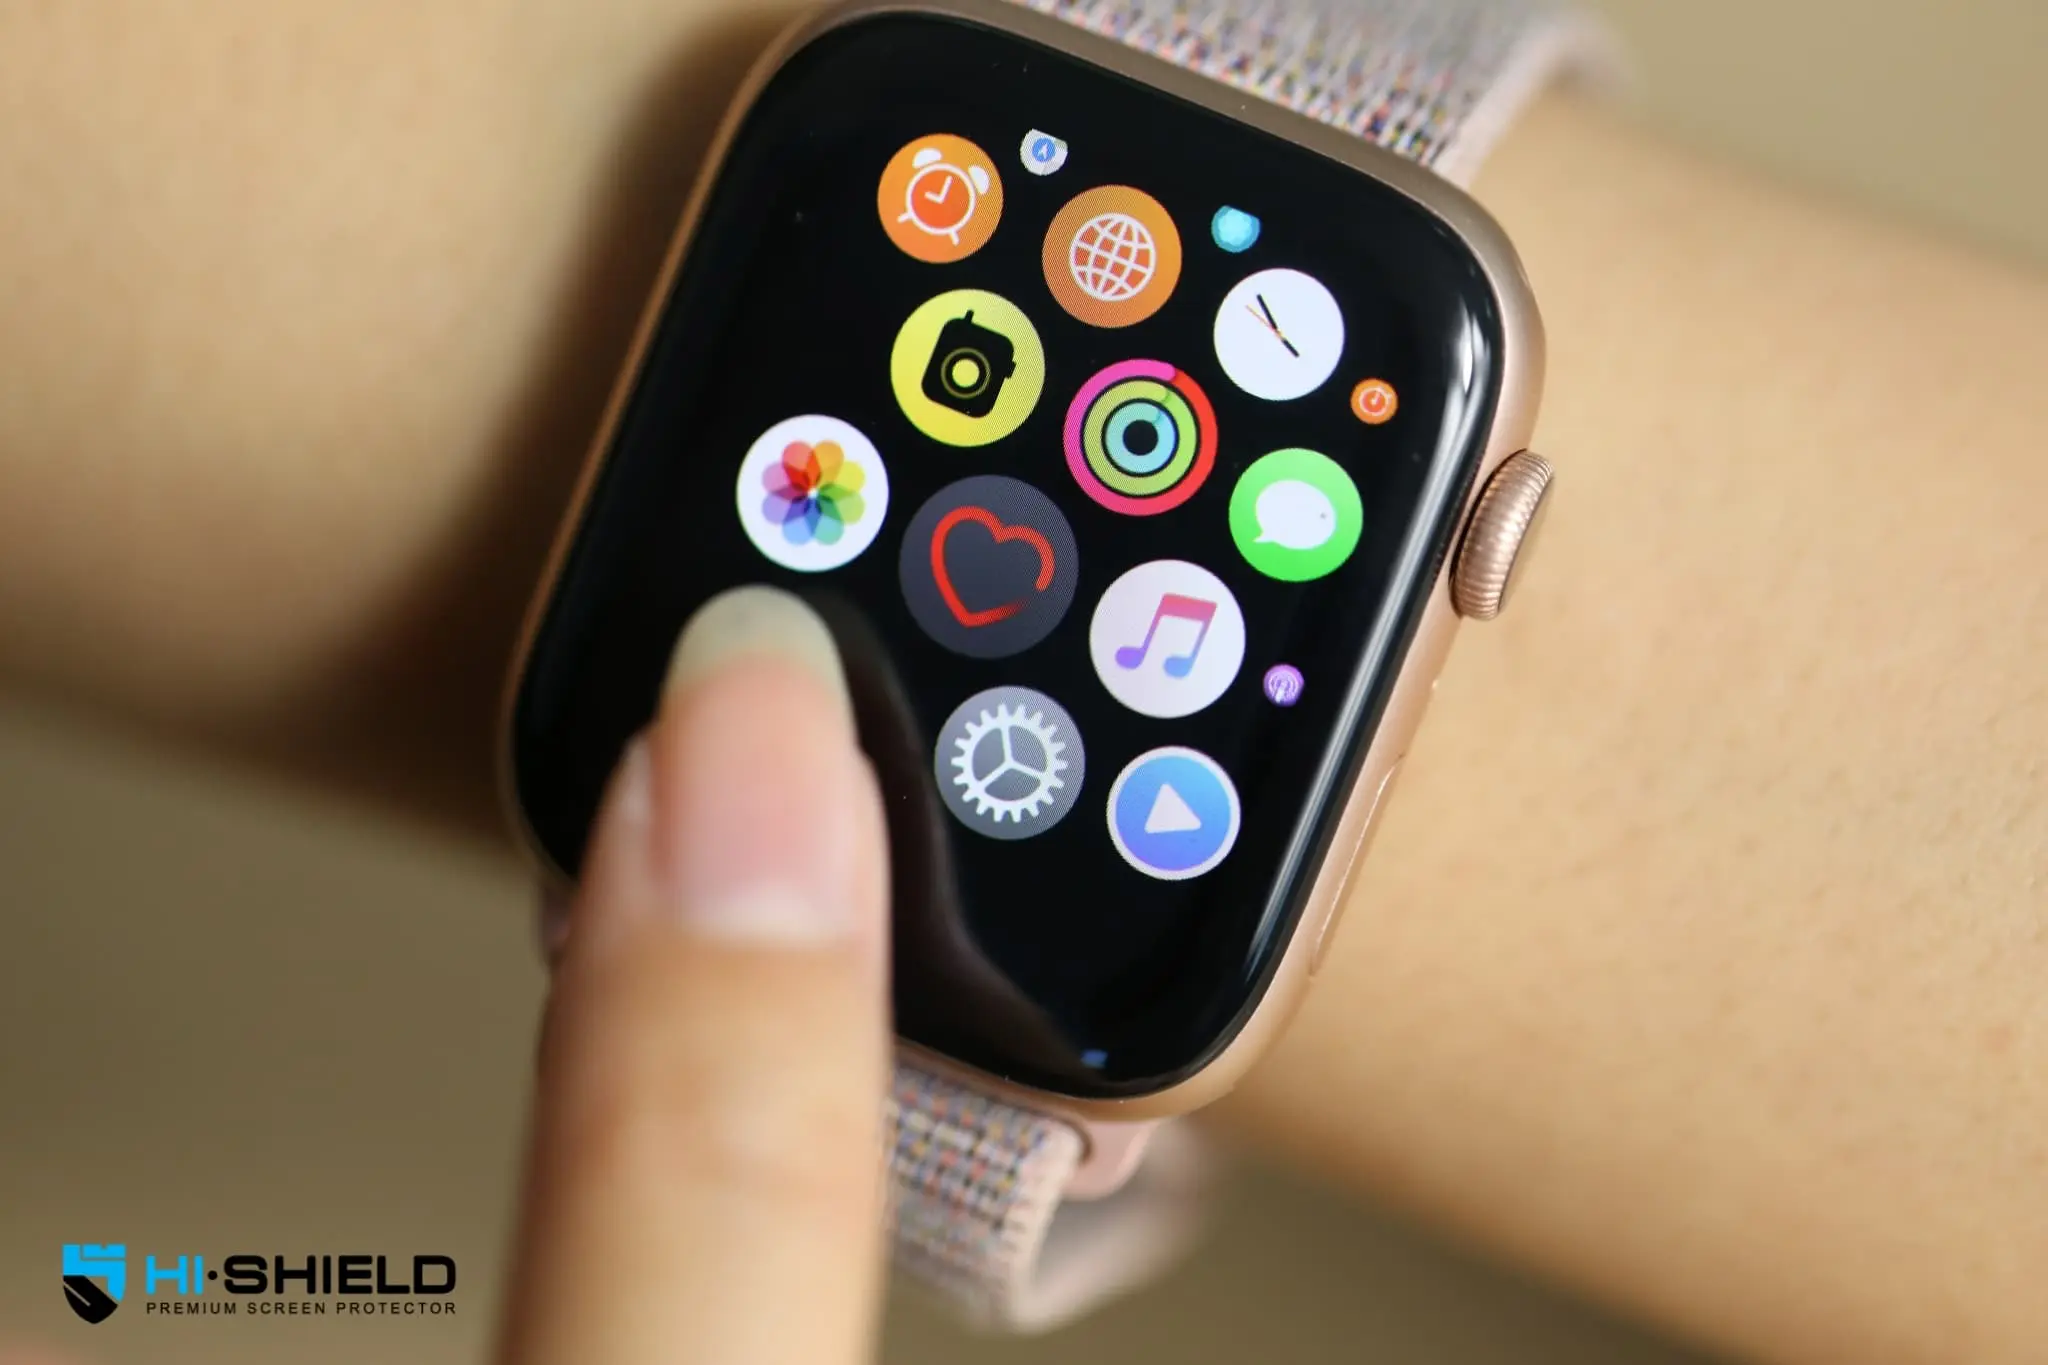 กระจกกันรอย Hishield รุ่น Watch 3D Acrylic Soft Glass - Apple Watch 44mm